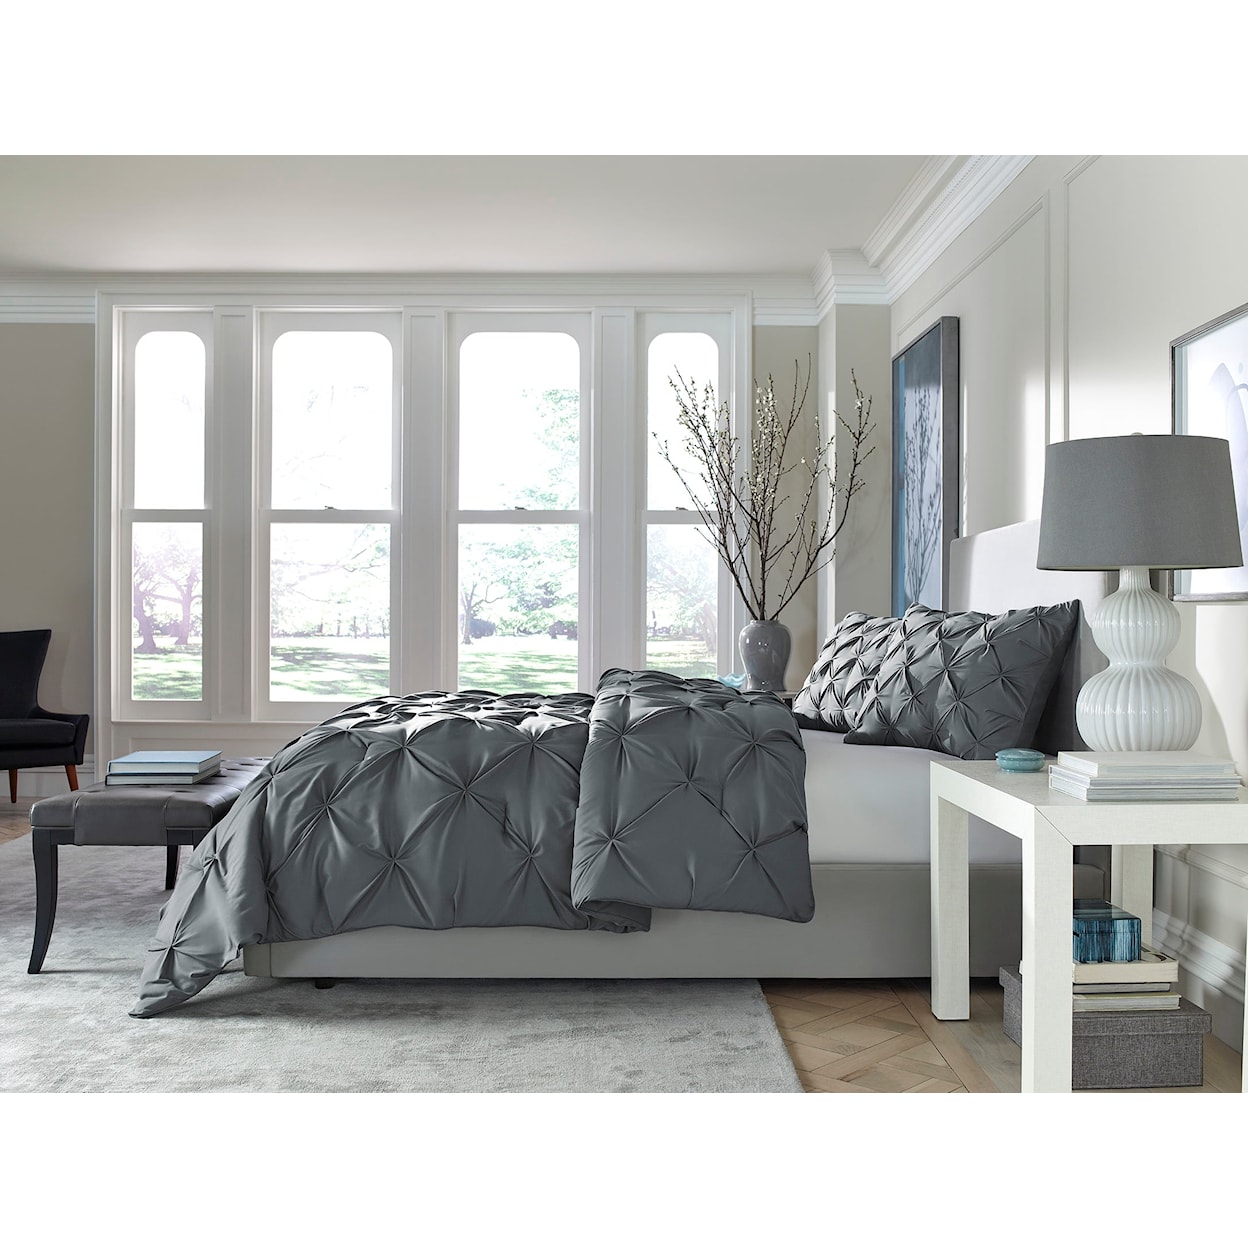 Sam's Furniture Sleep Essentials Pinch Down Alternative King Comforter Set